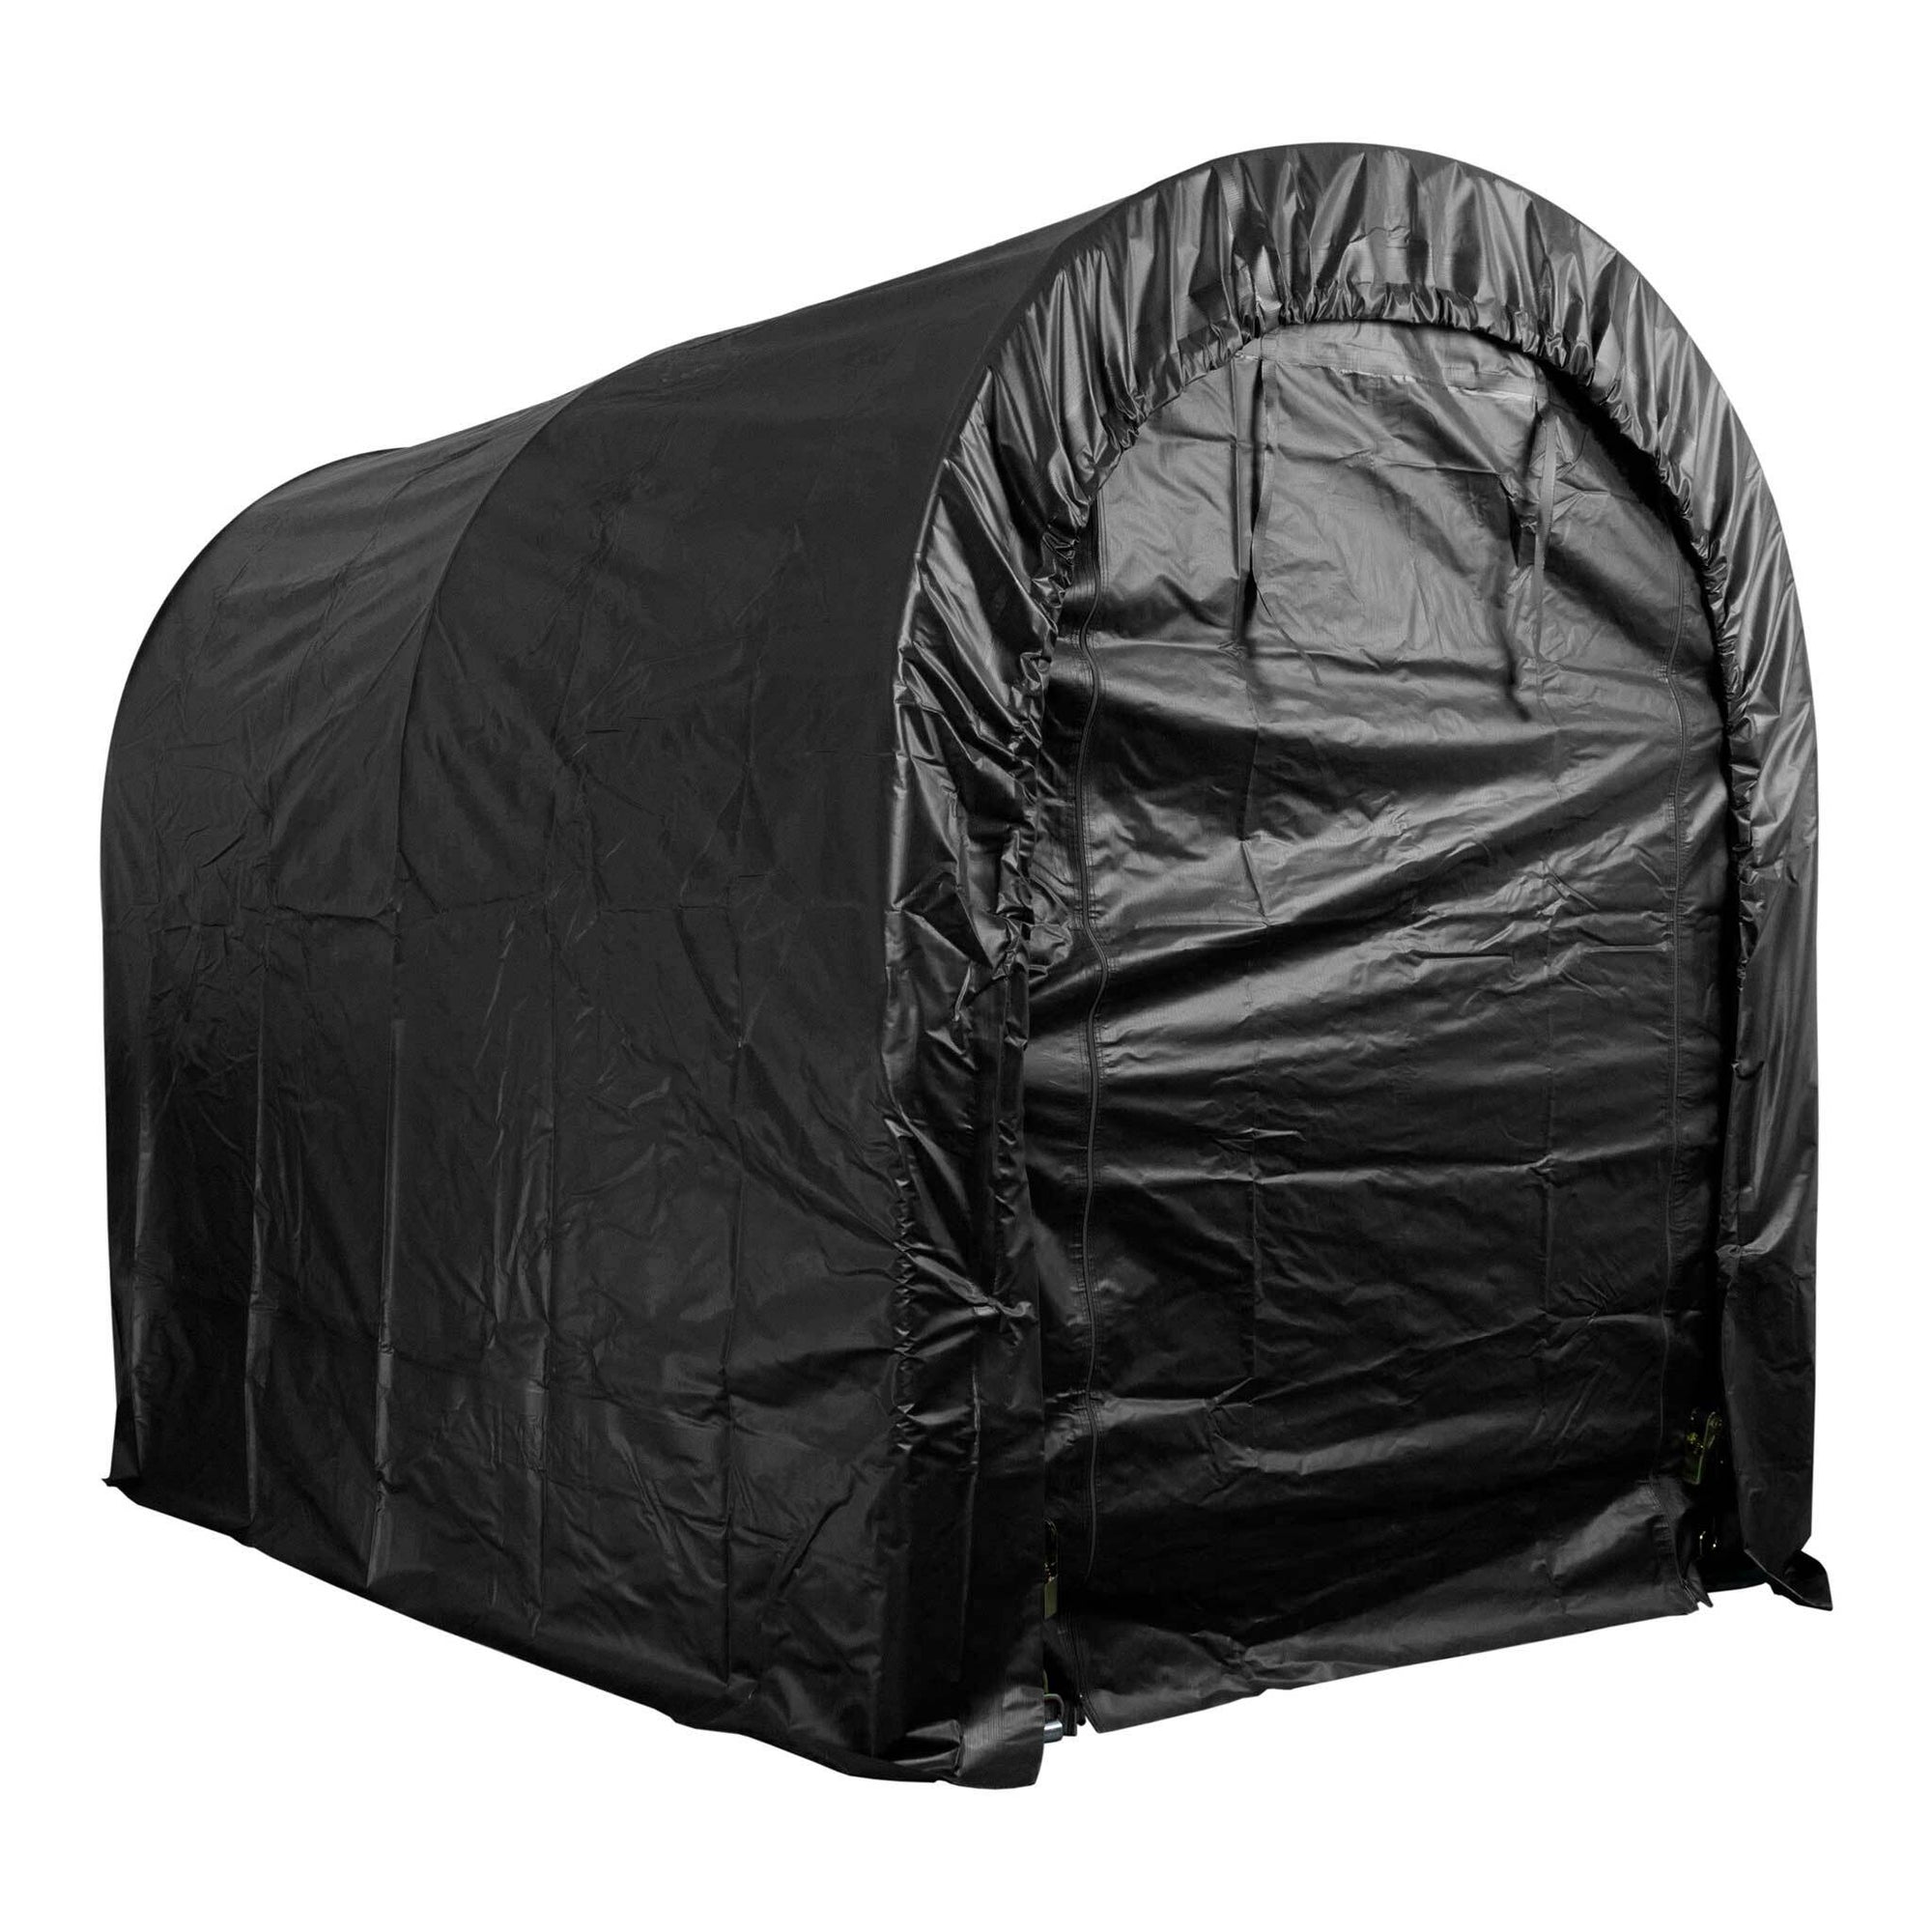 Fornorth Tente garage 1,6x2,4m, noir